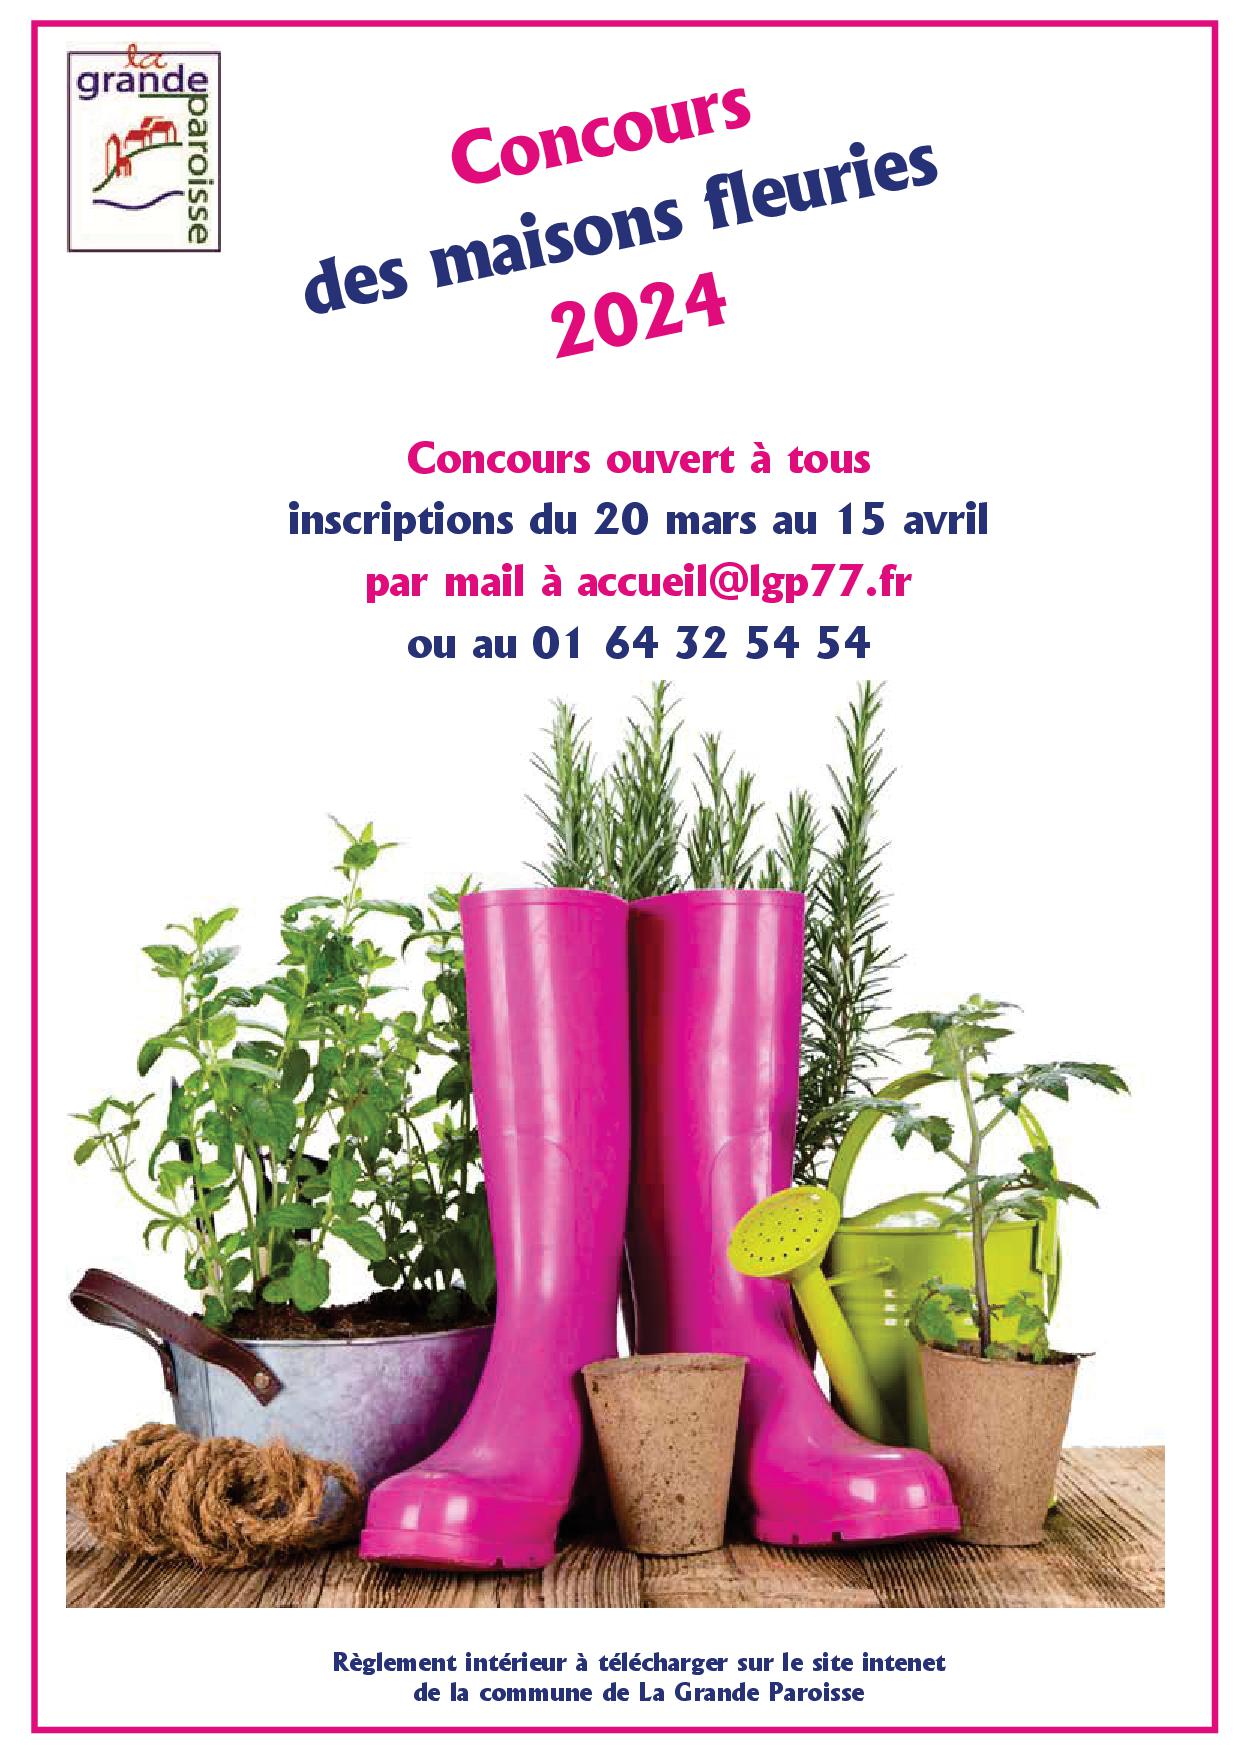 Concours des maisons fleuries 2024.jpg